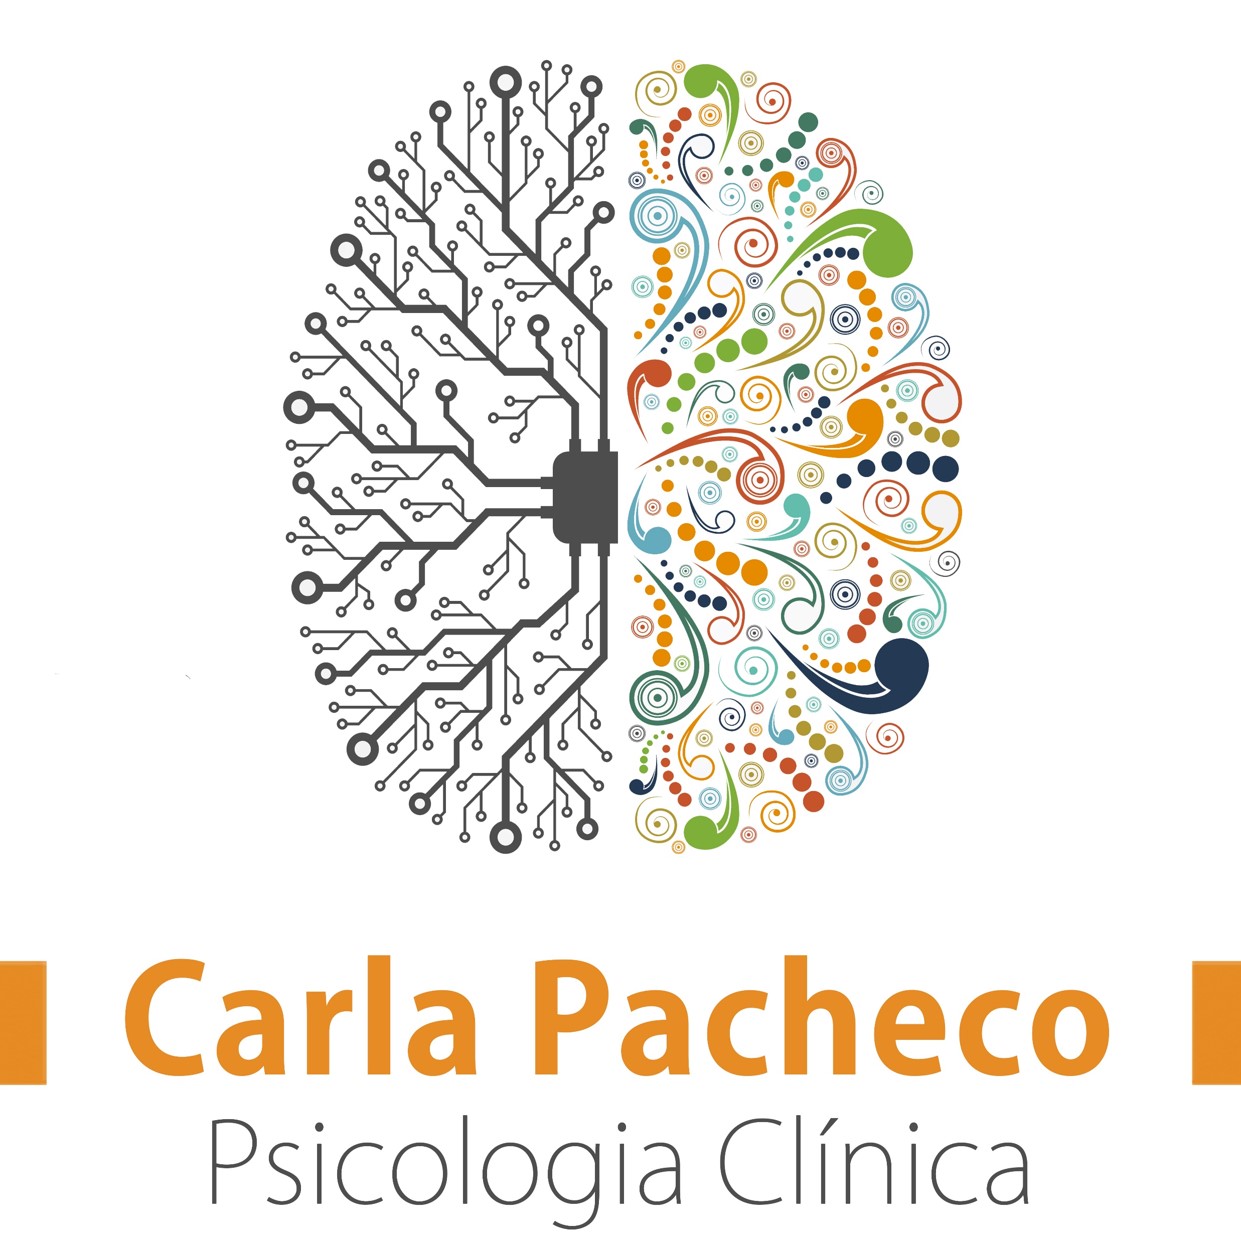 Logo Carla Pacheco small